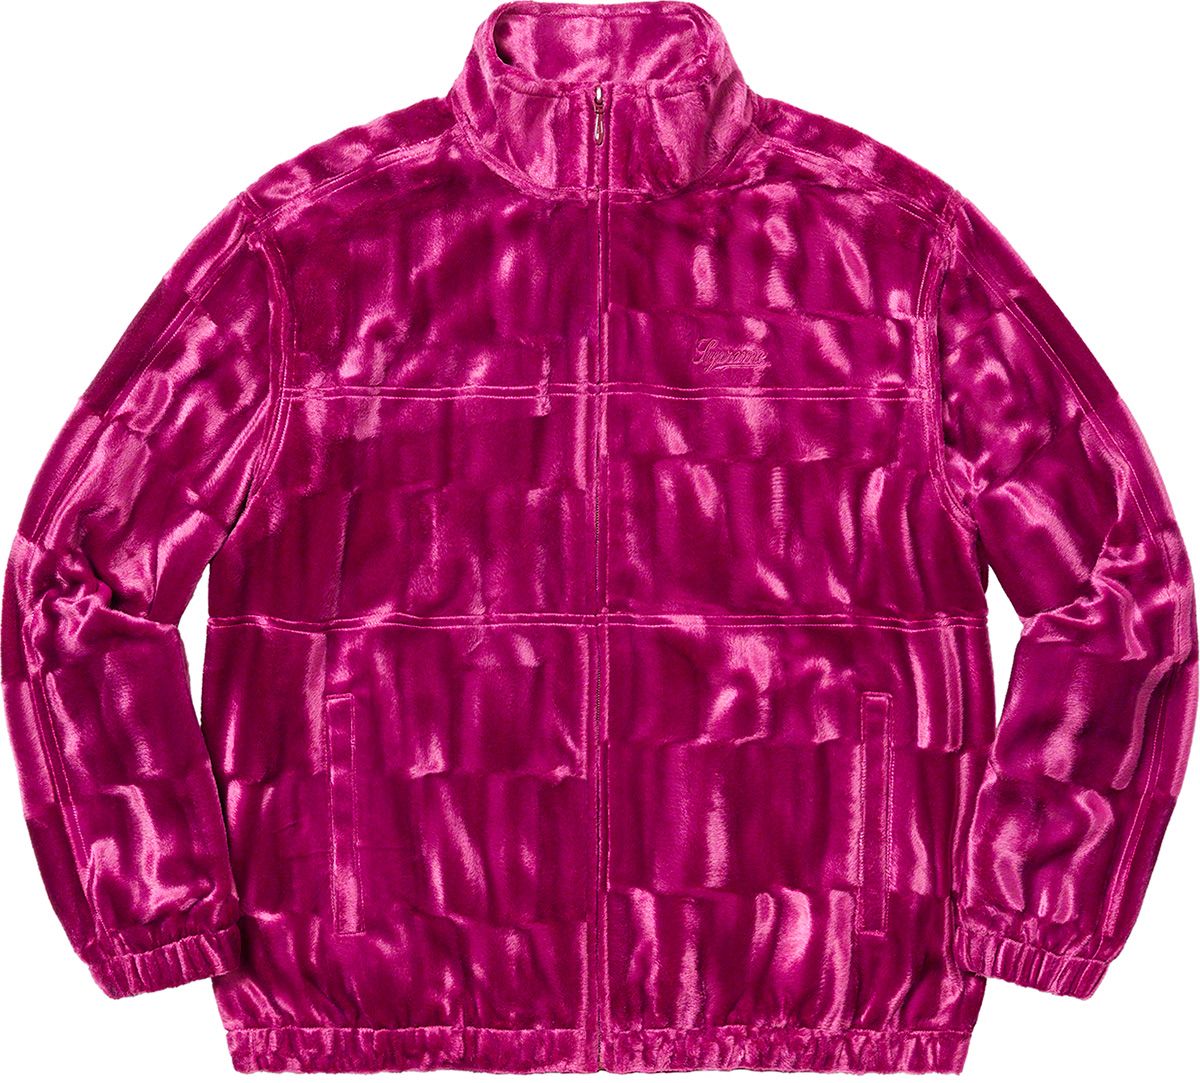 レビュー高評価の商品 Supreme studded velour track jacket - メンズ